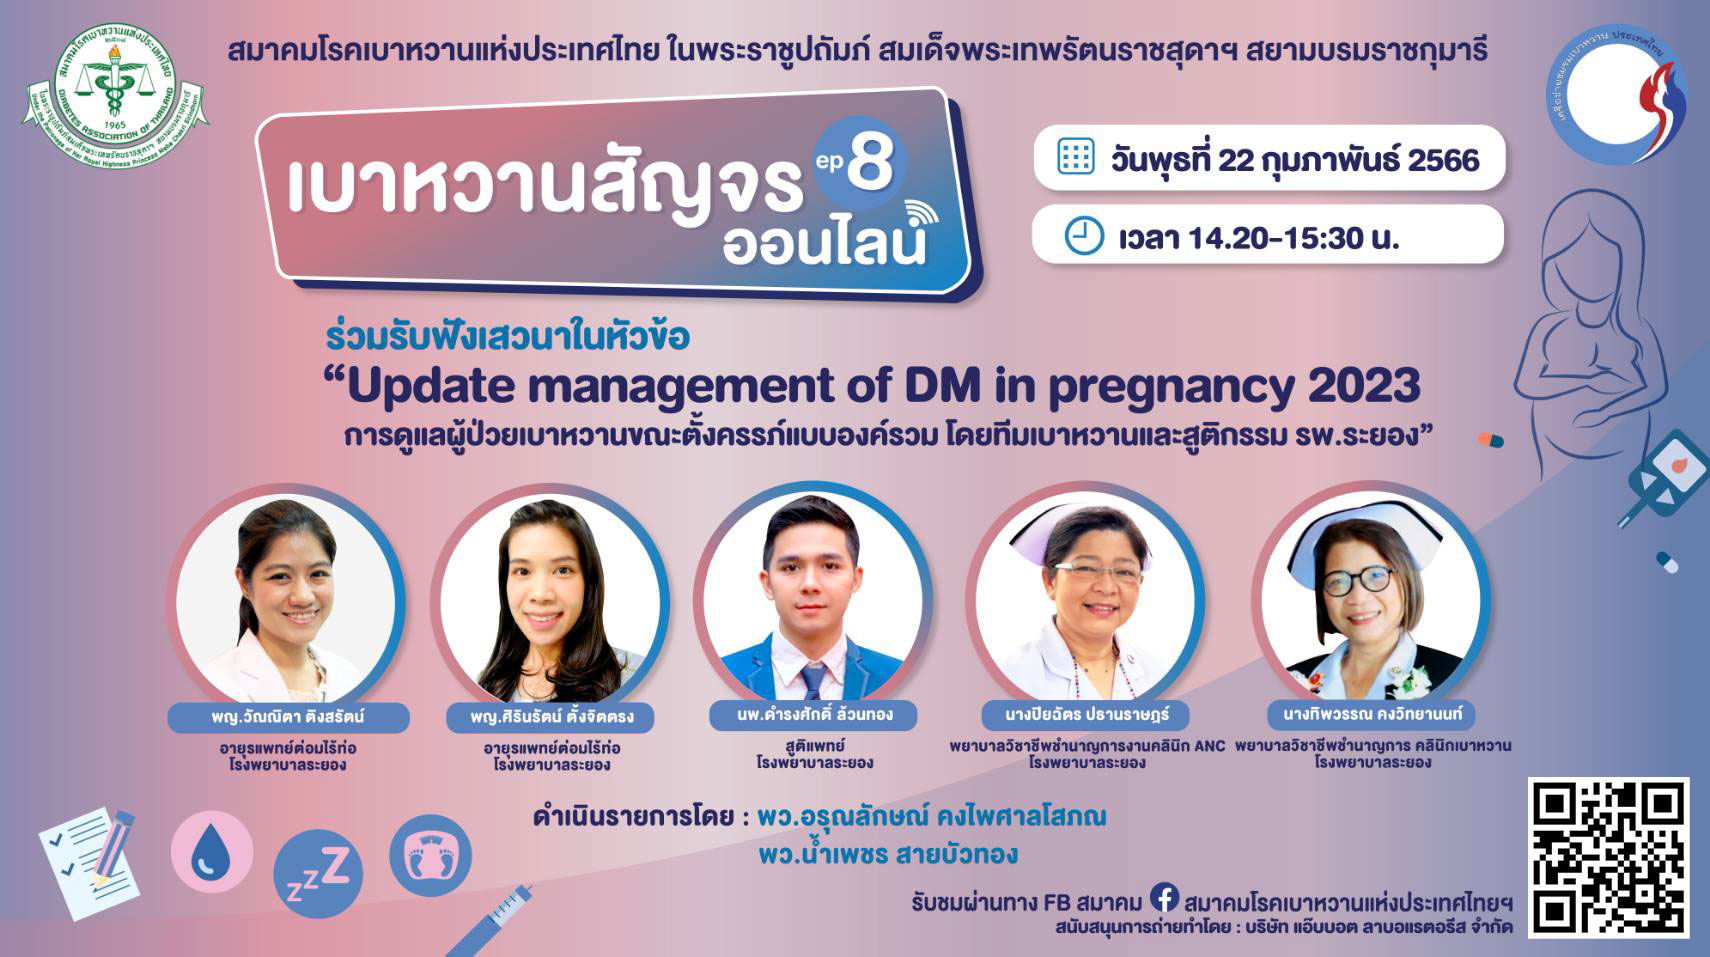 ขอเชิญร่วมรับฟังเสวนา บาหวานสัญจรออนไลน์ Ep.8  หัวข้อ “Update management of DM in pregnancy 2023  การดูแลผู้ป่วยเบาหวานขณะตั้งครรภ์แบบองค์รวม”